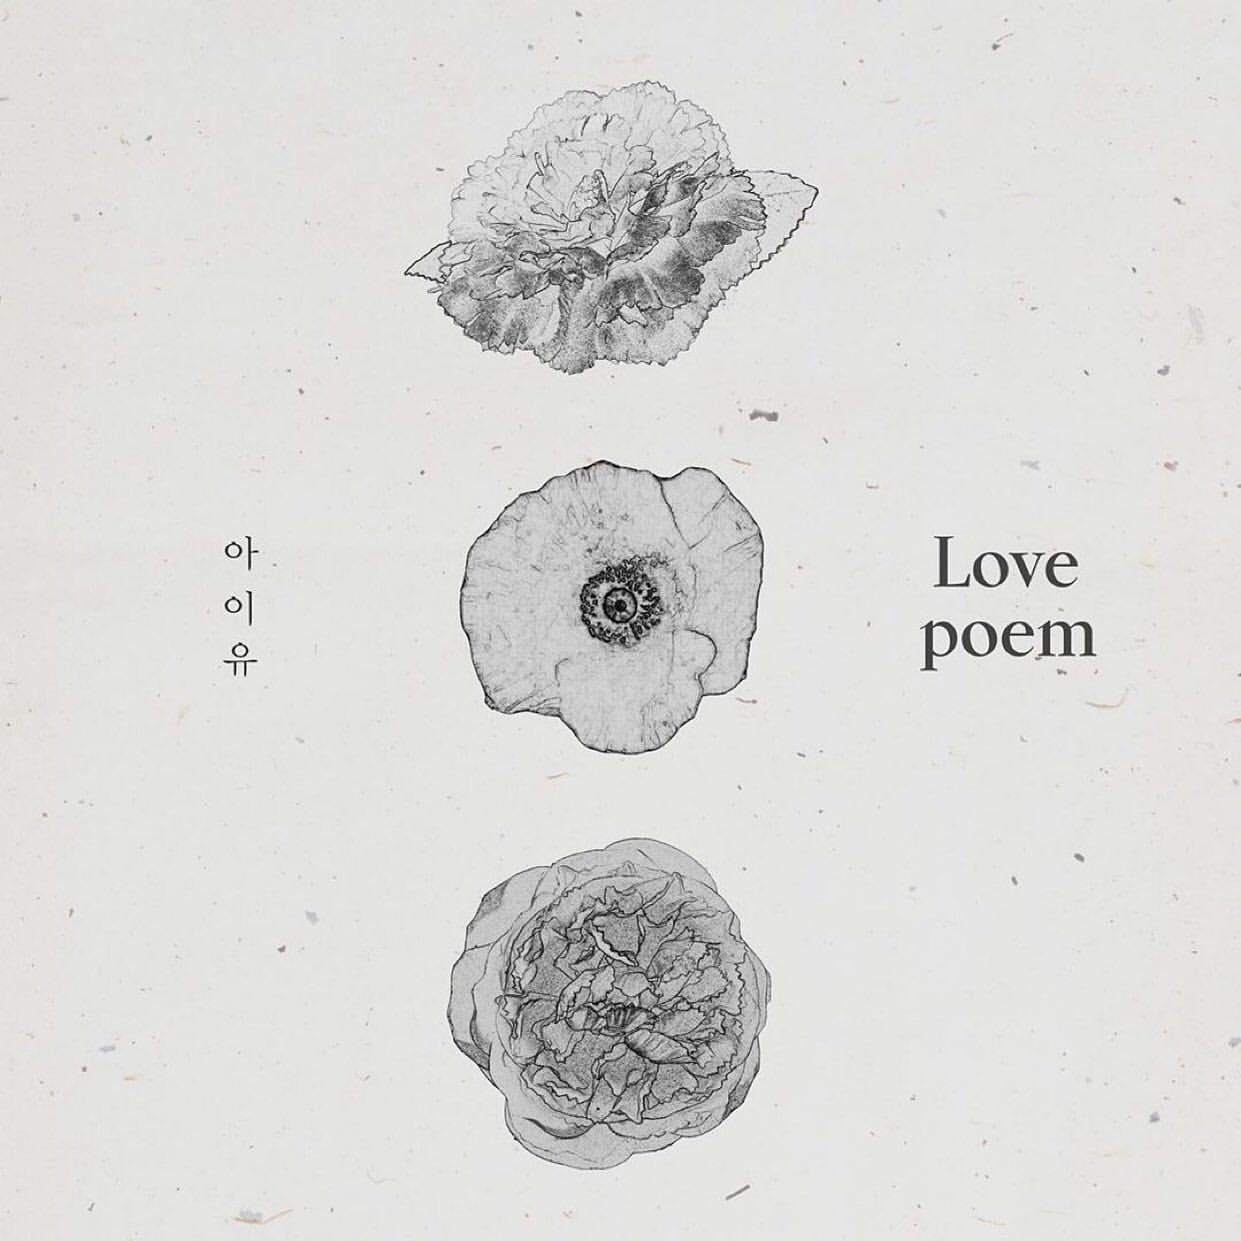 Love Alarm: Série coreana da Netflix imagina o amor nas mãos da